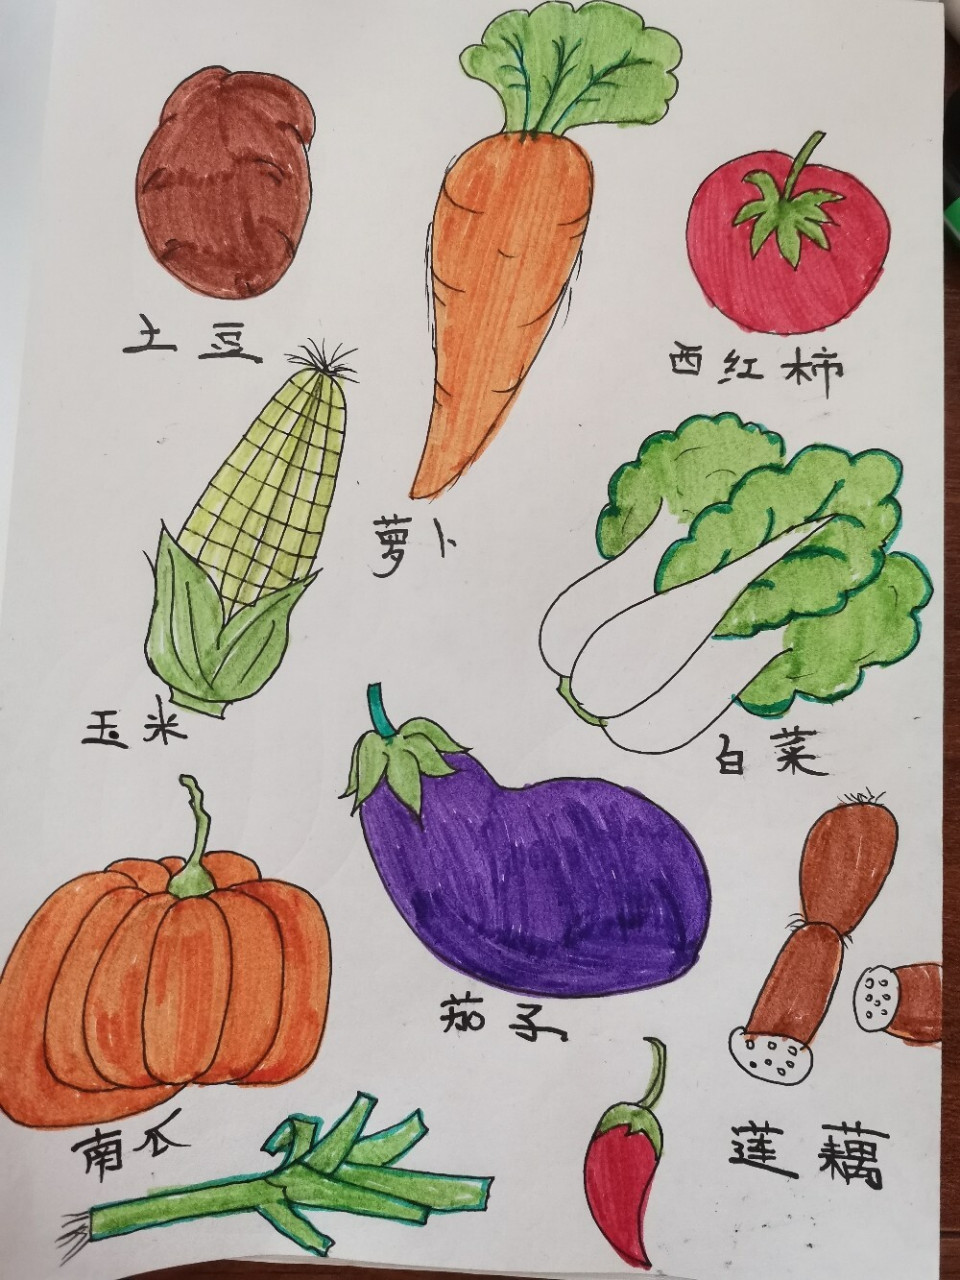 水彩手绘,蔬菜简笔画 萝卜青菜,各有所爱(73°з-79